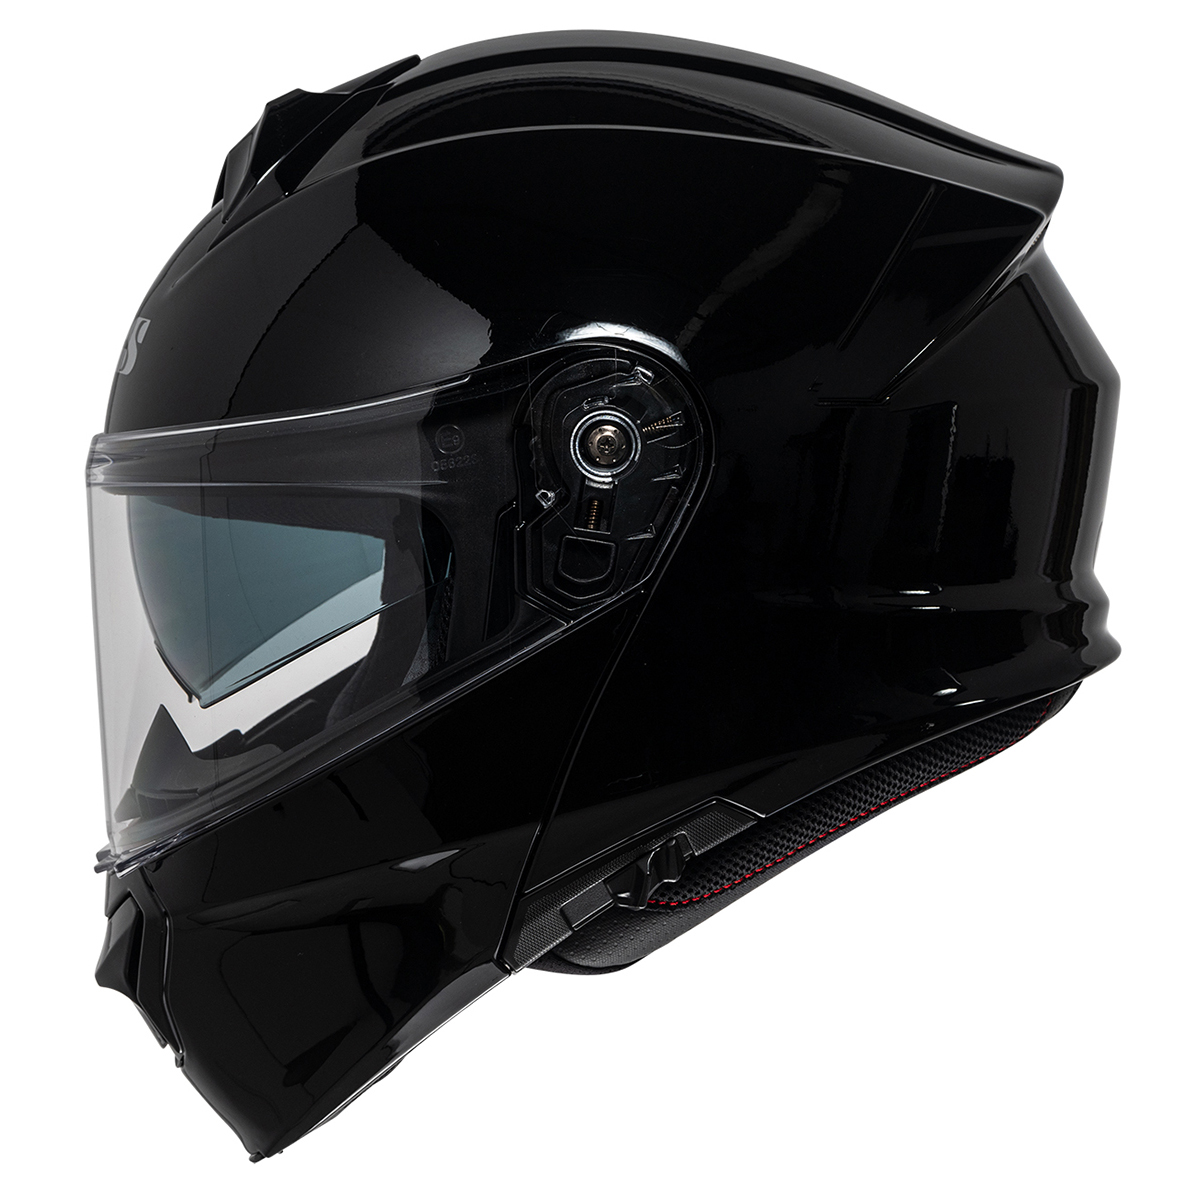 iXS Helm iXS301 1.0, schwarz